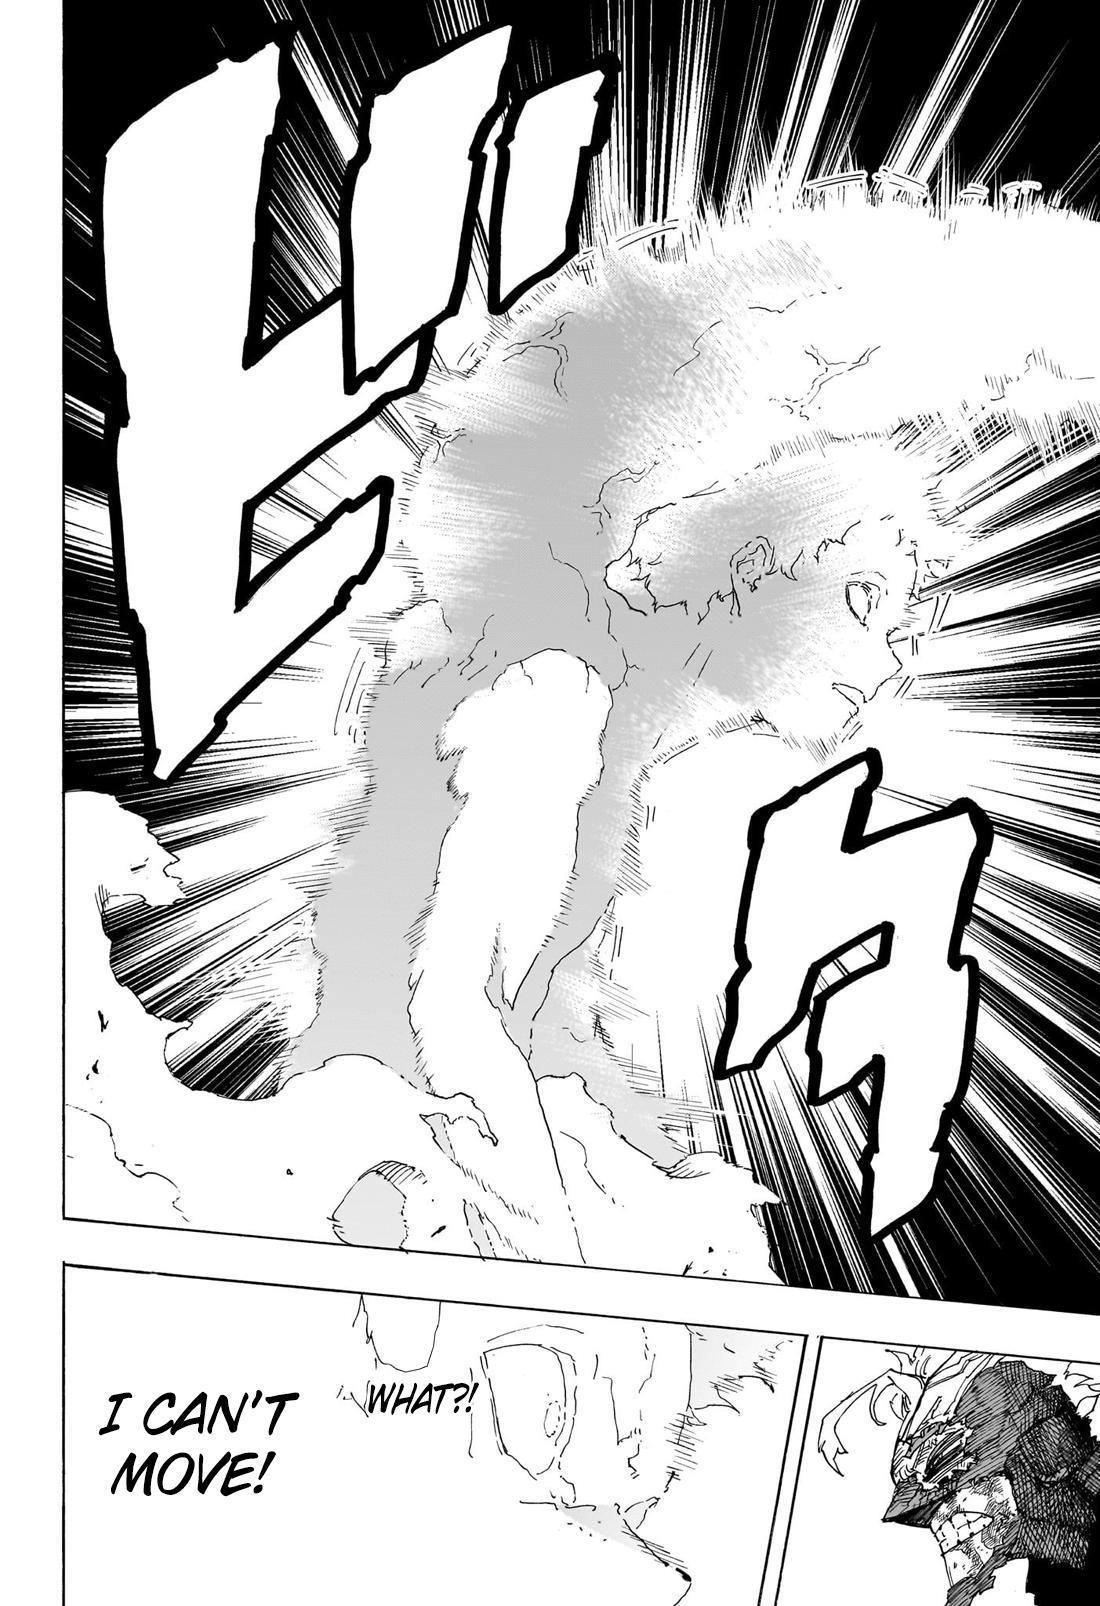 Boku no Hero Academia Ch.408 Page 12 - Mangago